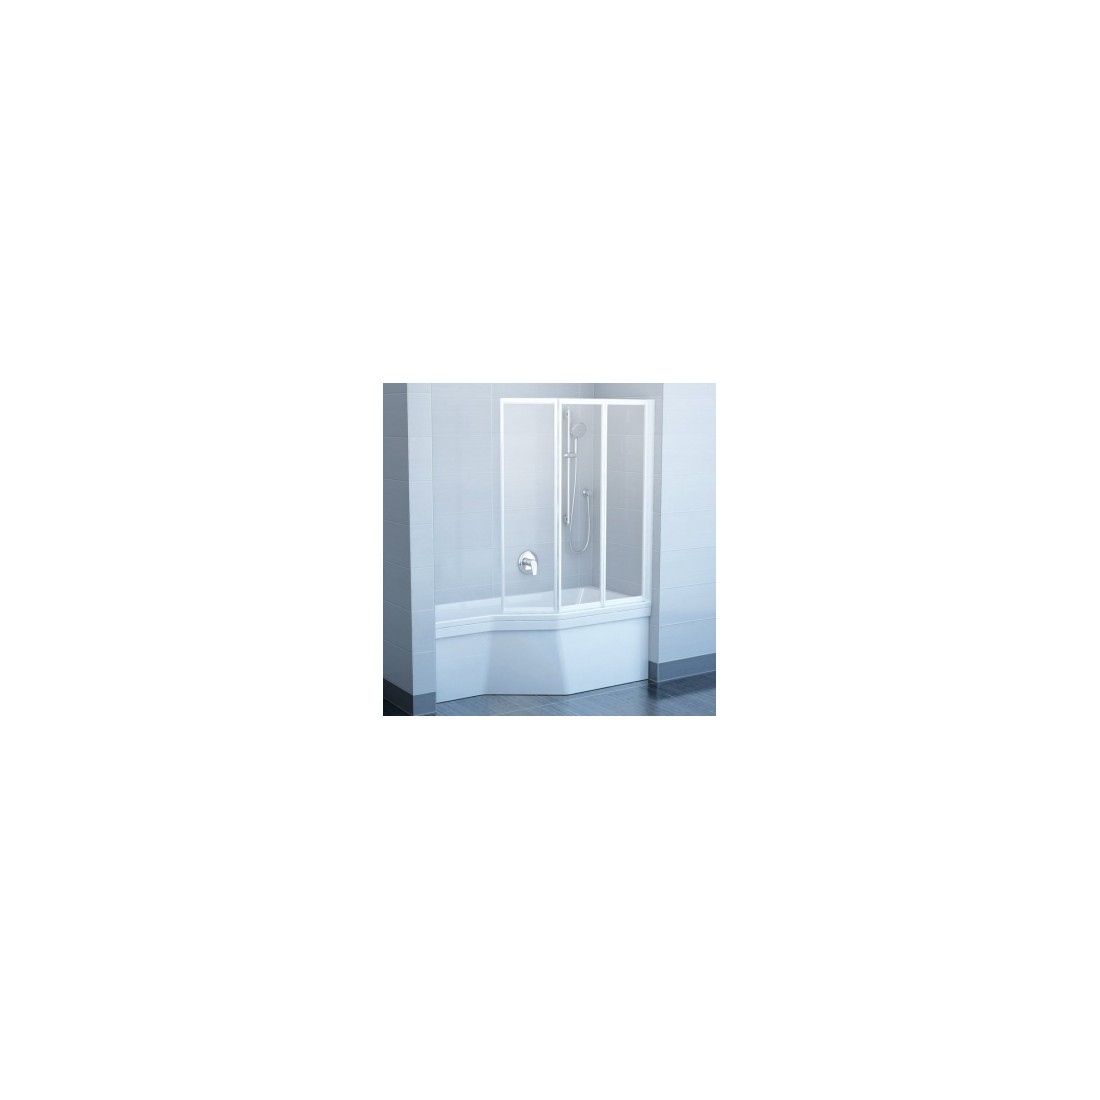 Vonios sienelė  RAVAK VS3 130 balta + stiklas Transparent